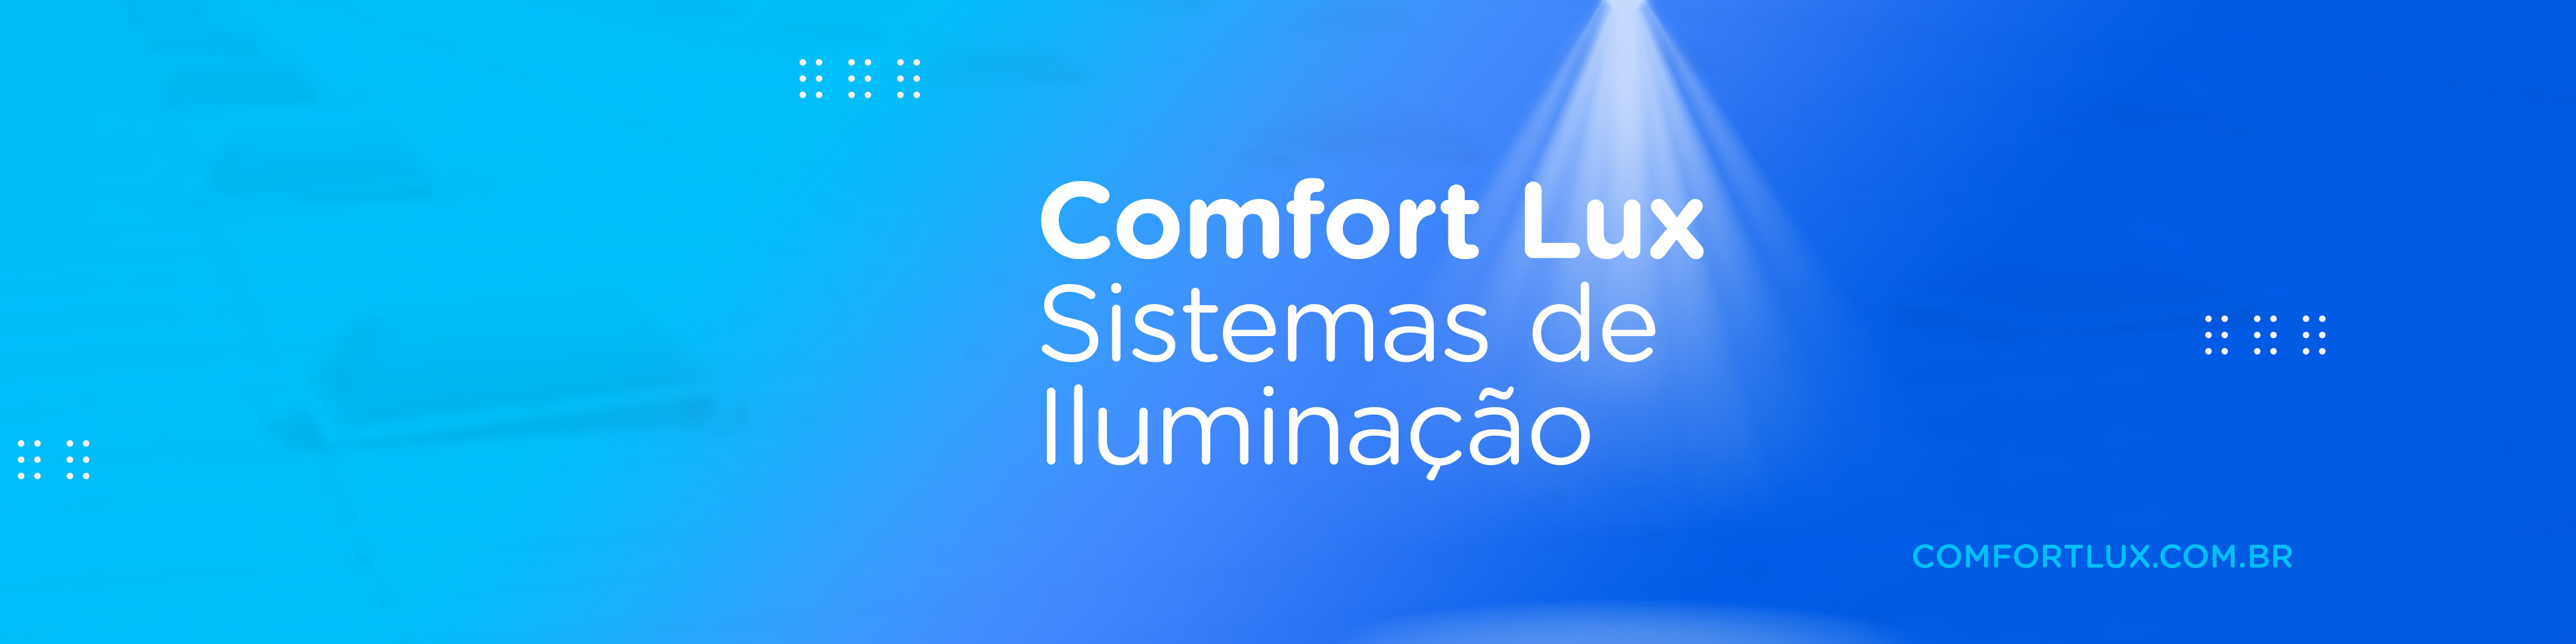 Comfort Lux - Sistemas de Iluminação